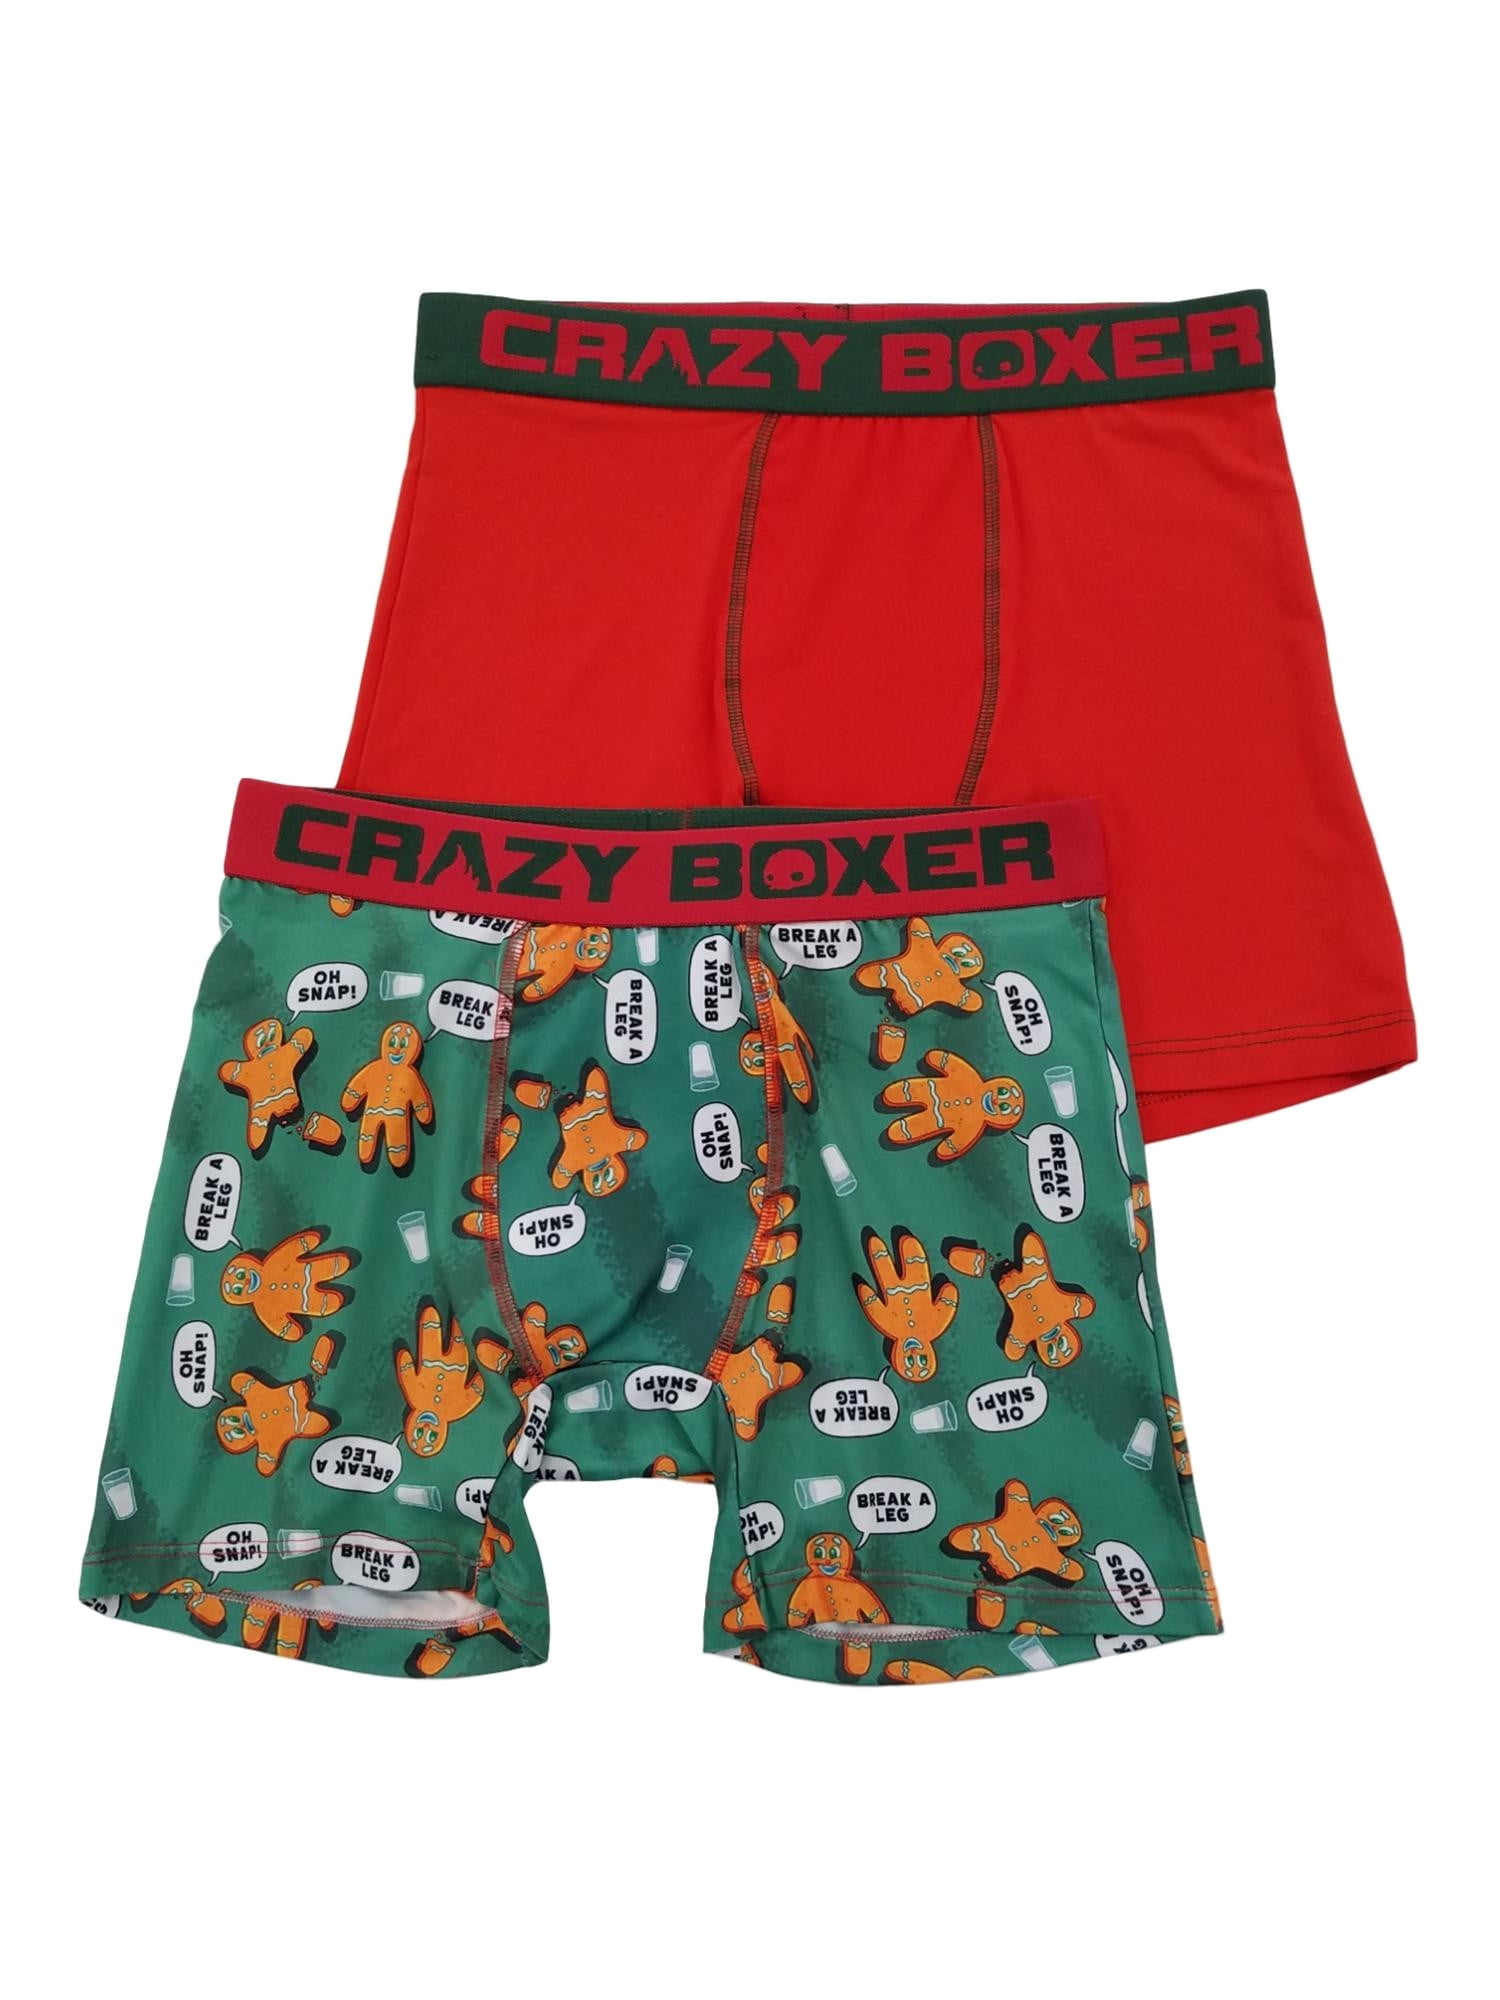 Mens 2-Pack Boxer Briefs Polyester Underwear Trunk Underwear with Birds with Flowers Design 